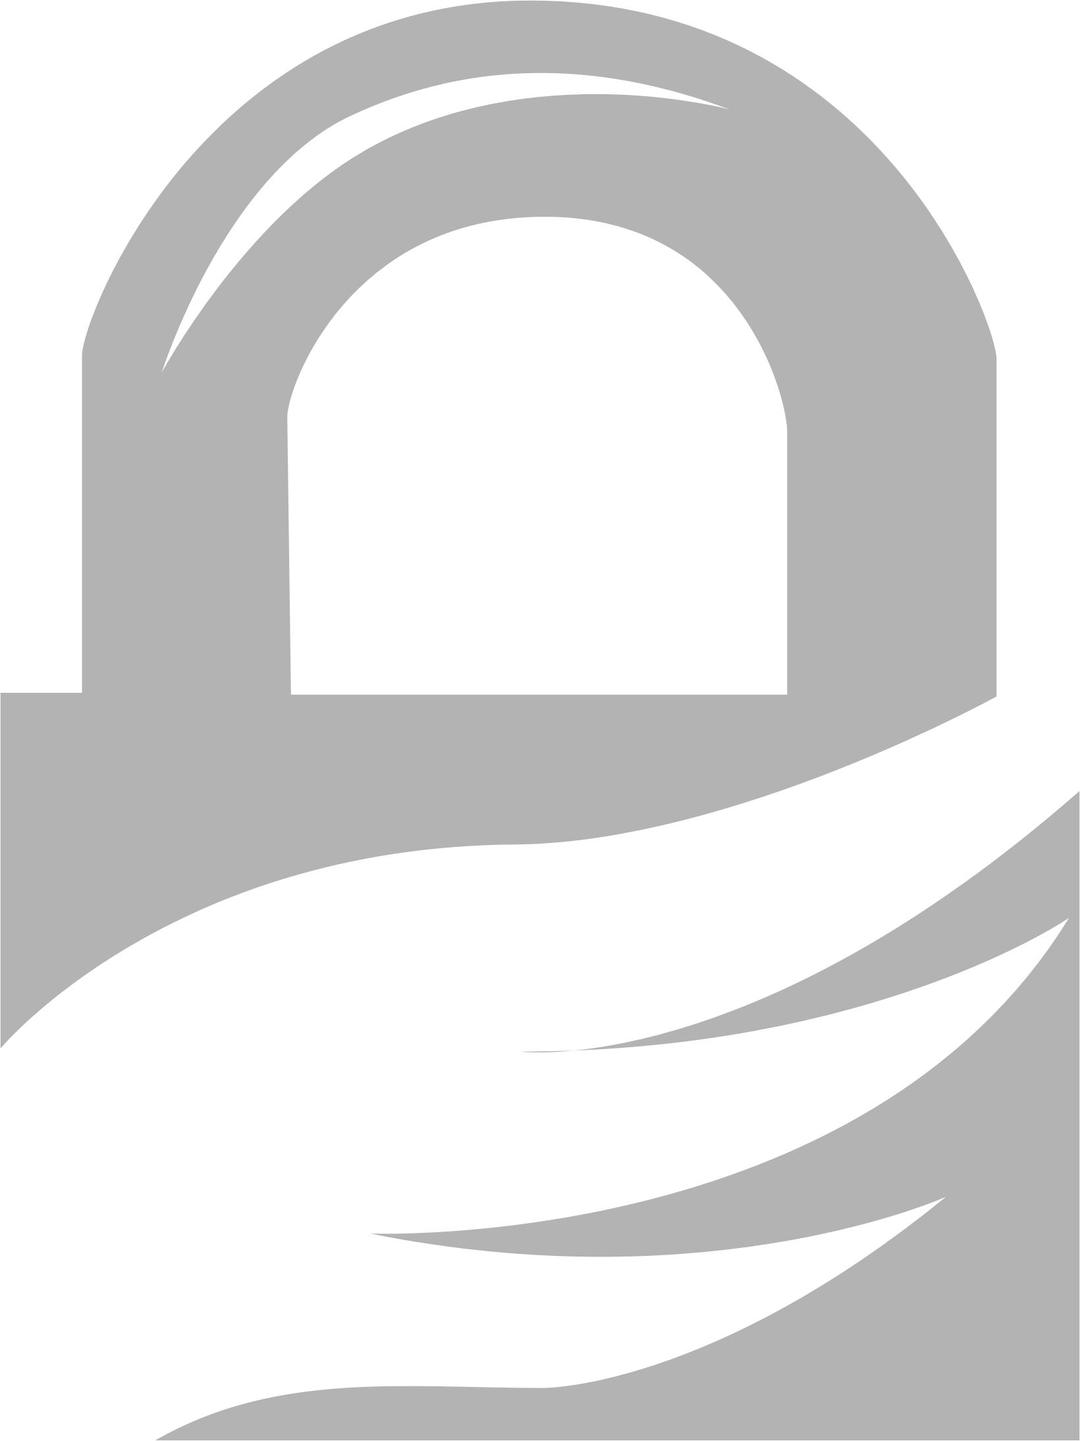 GnuPG logo png transparent